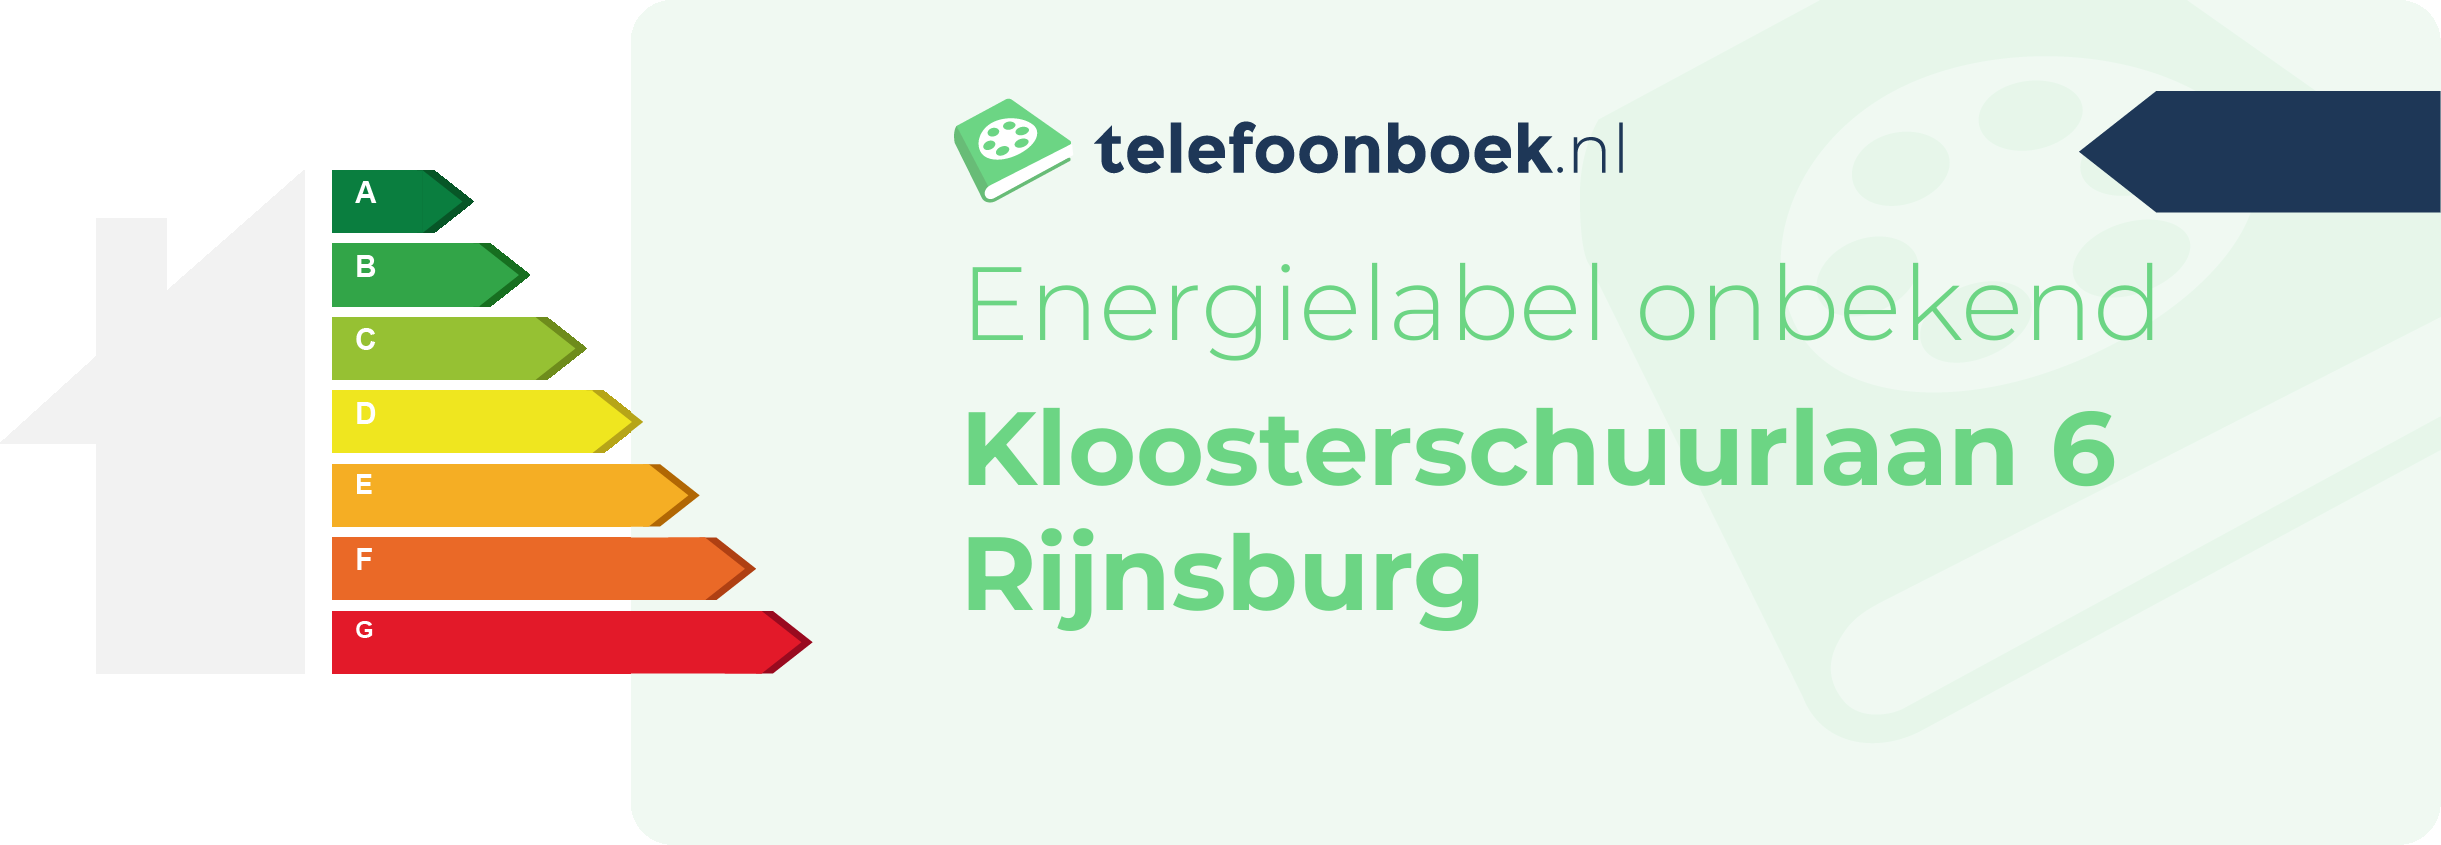 Energielabel Kloosterschuurlaan 6 Rijnsburg